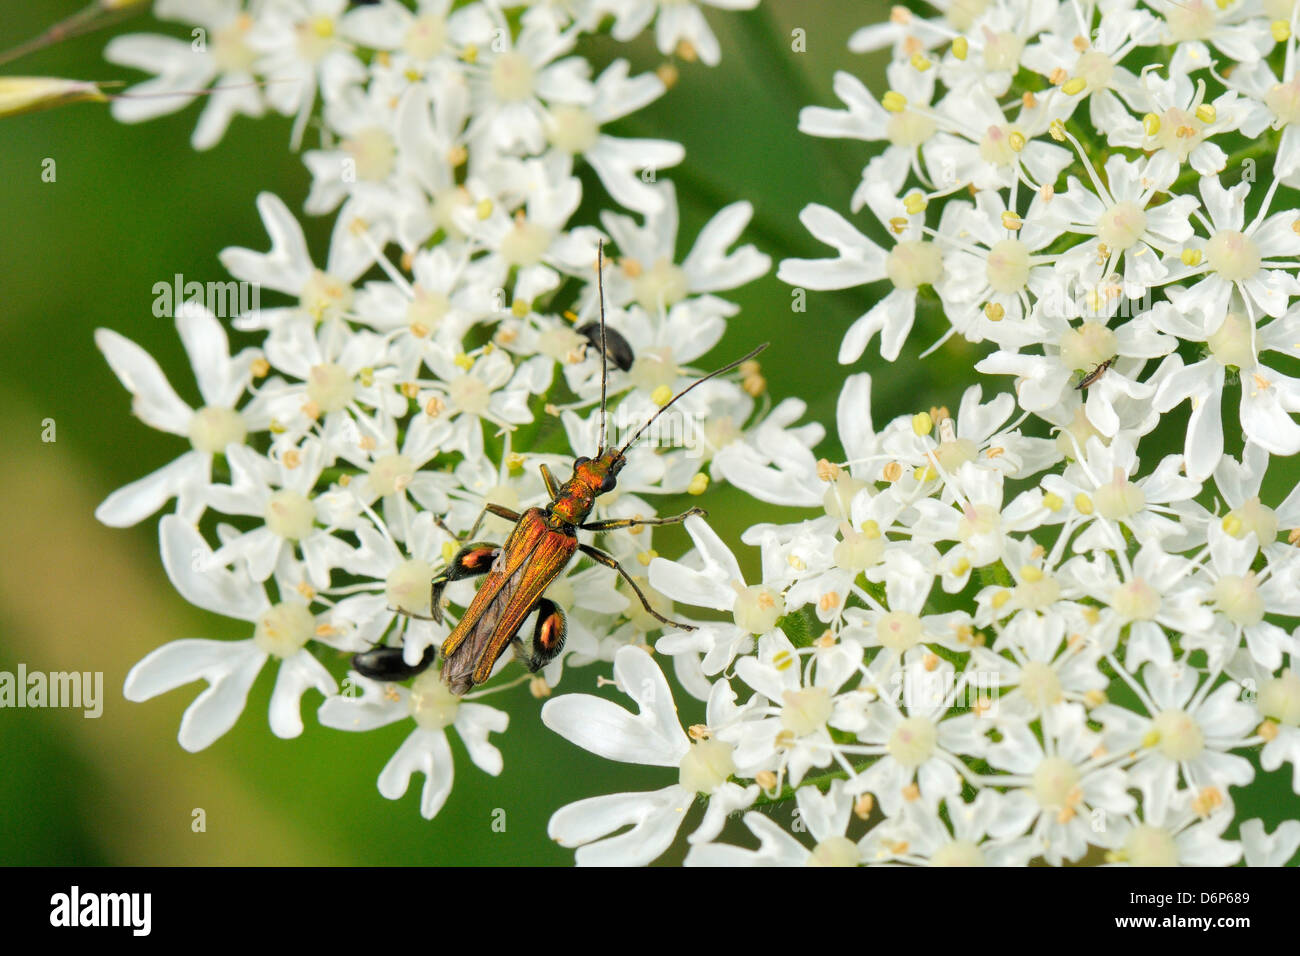 Macho patas gruesas flor escarabajo (Oedemera nobilis) forrajeando en común flores hogweed, Wiltshire, Inglaterra, Reino Unido. Foto de stock